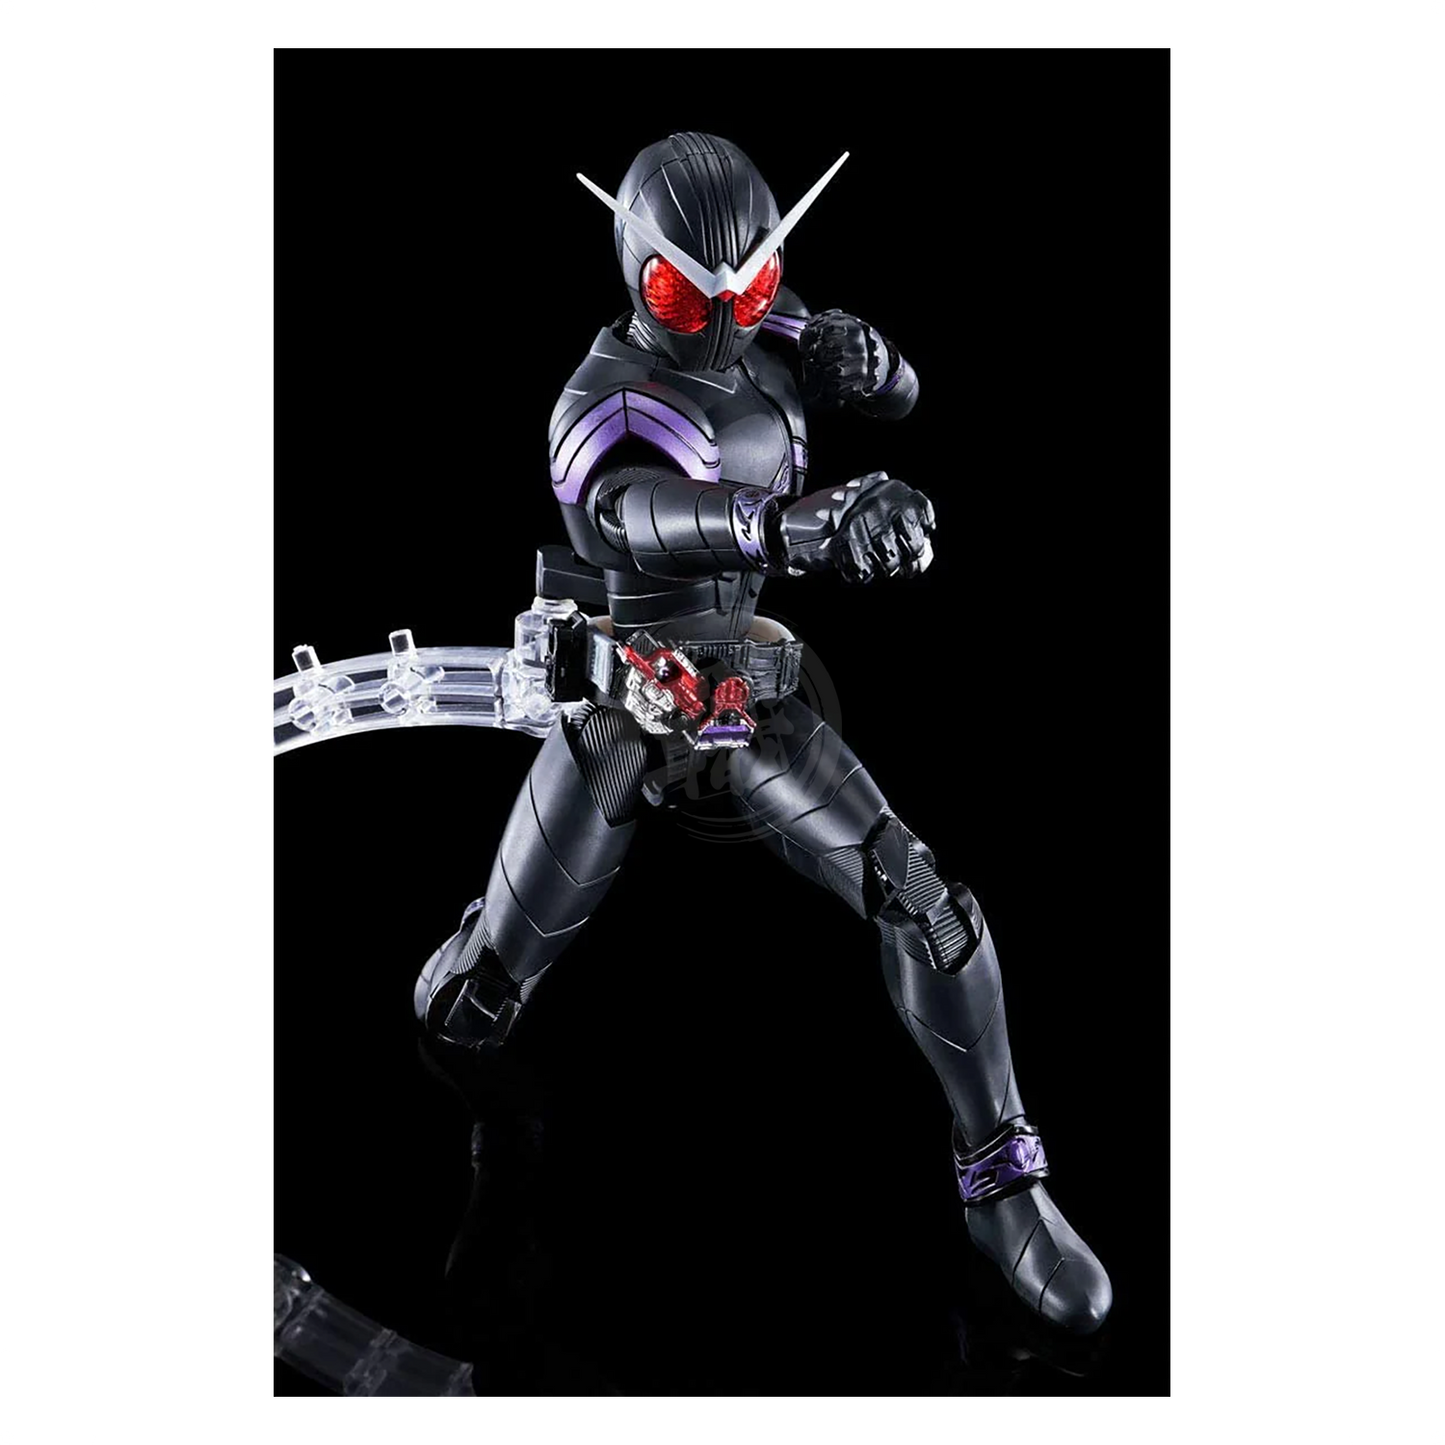 Bandai - Figure-Rise Standard Kamen Rider Joker - ShokuninGunpla